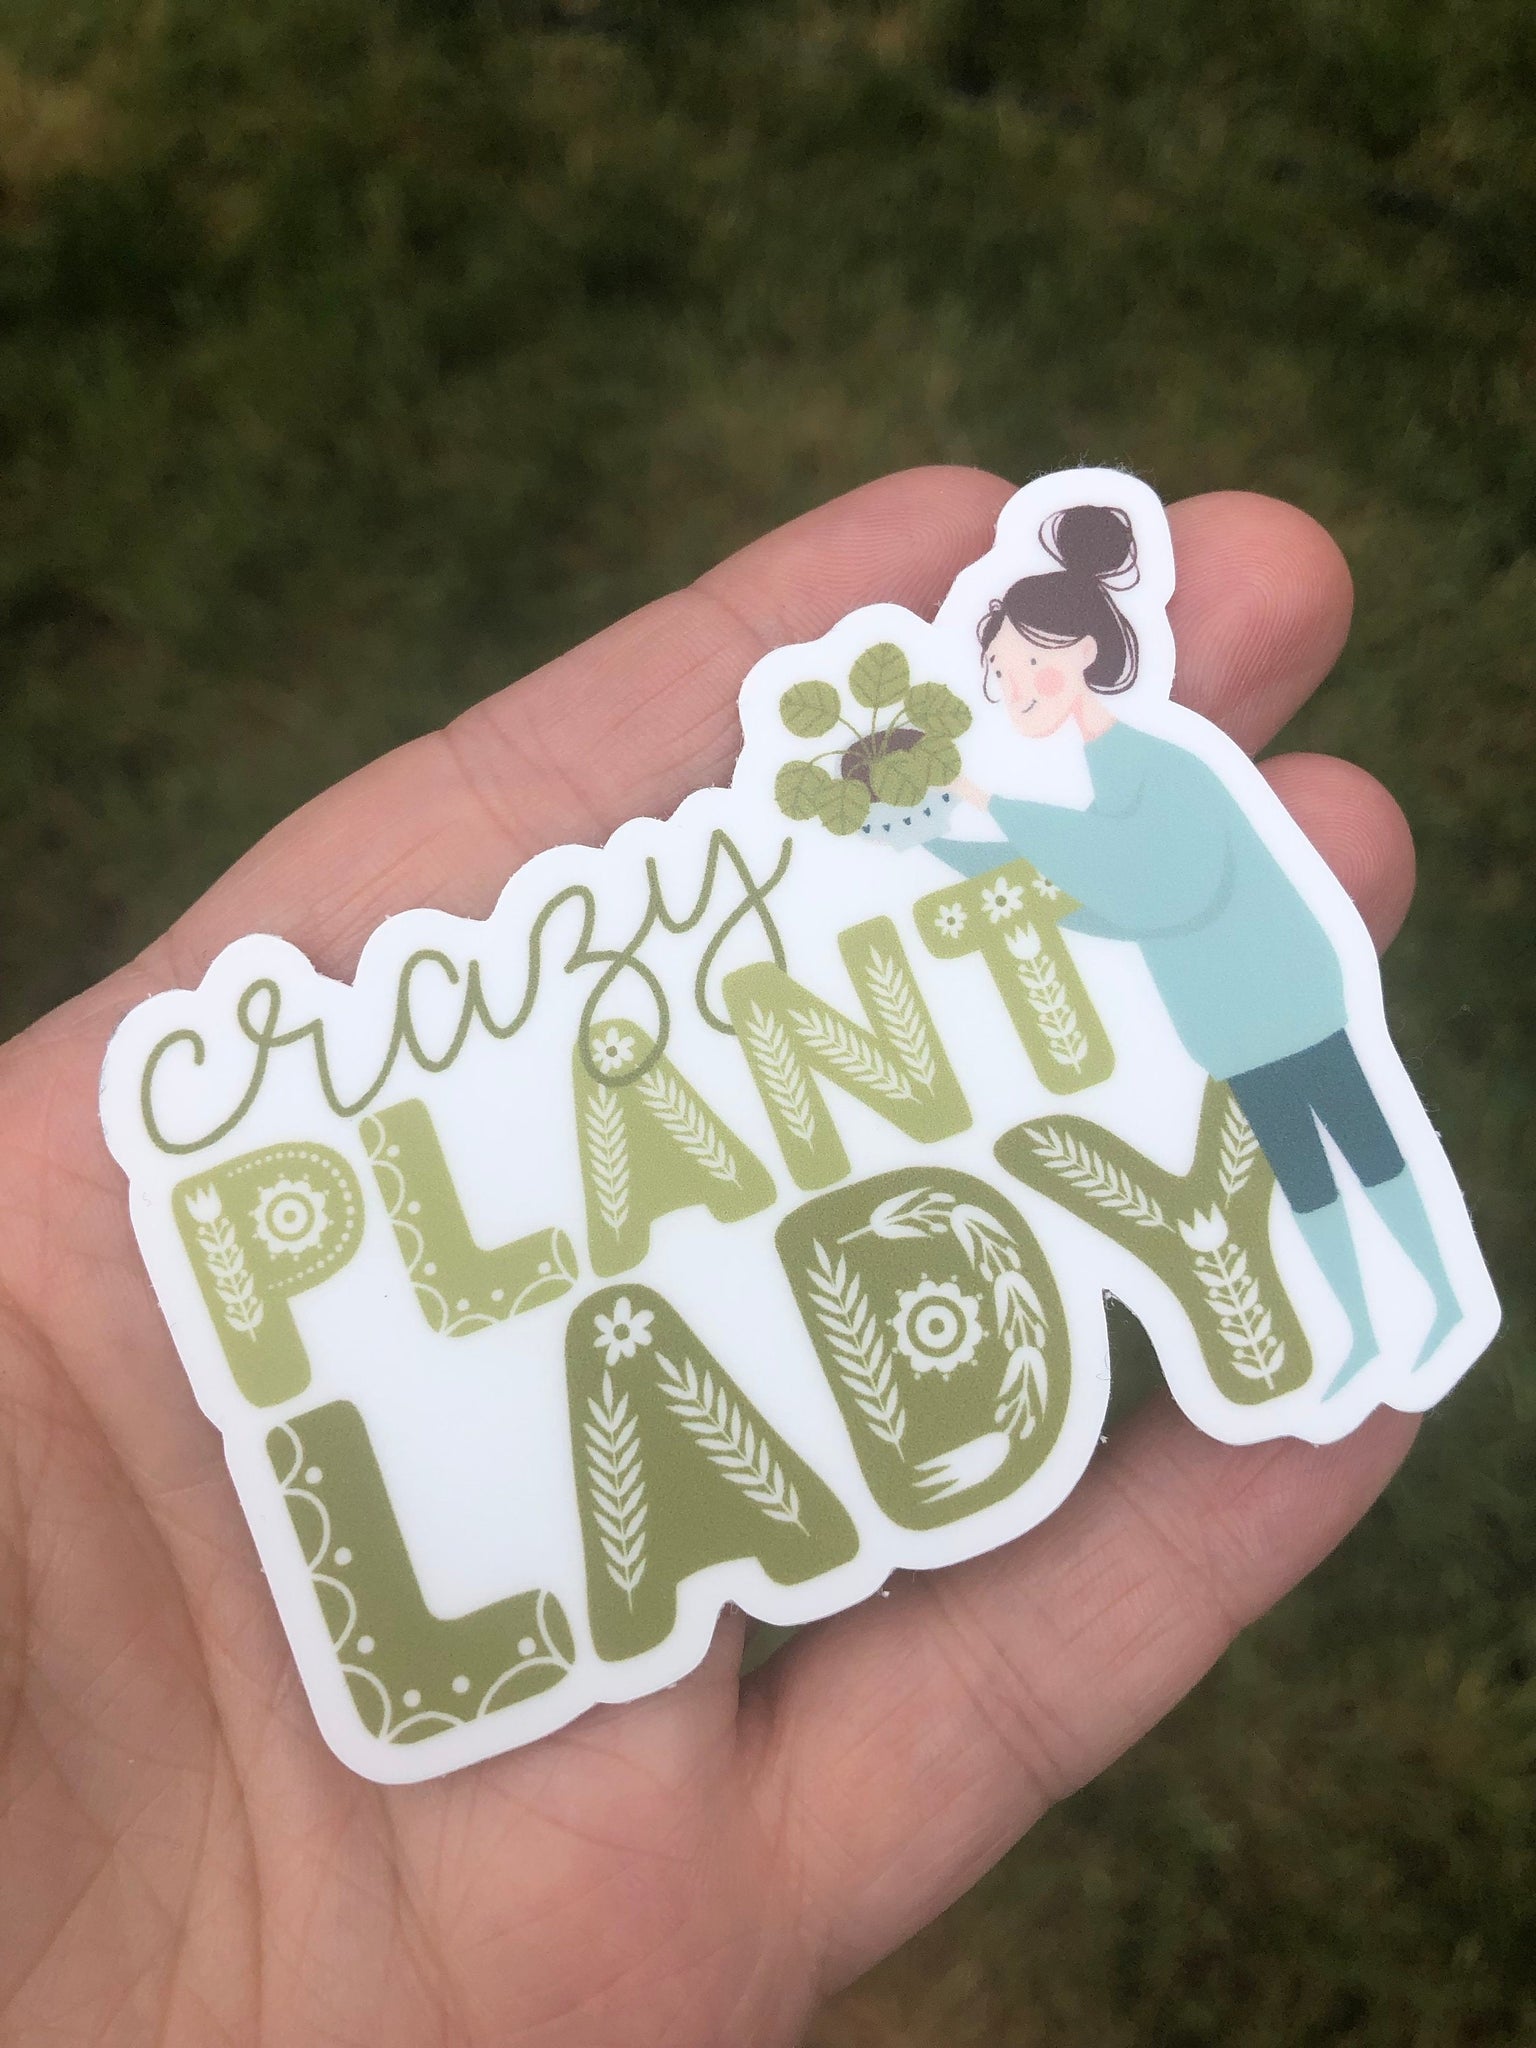 Crazy Plant Lady sticker